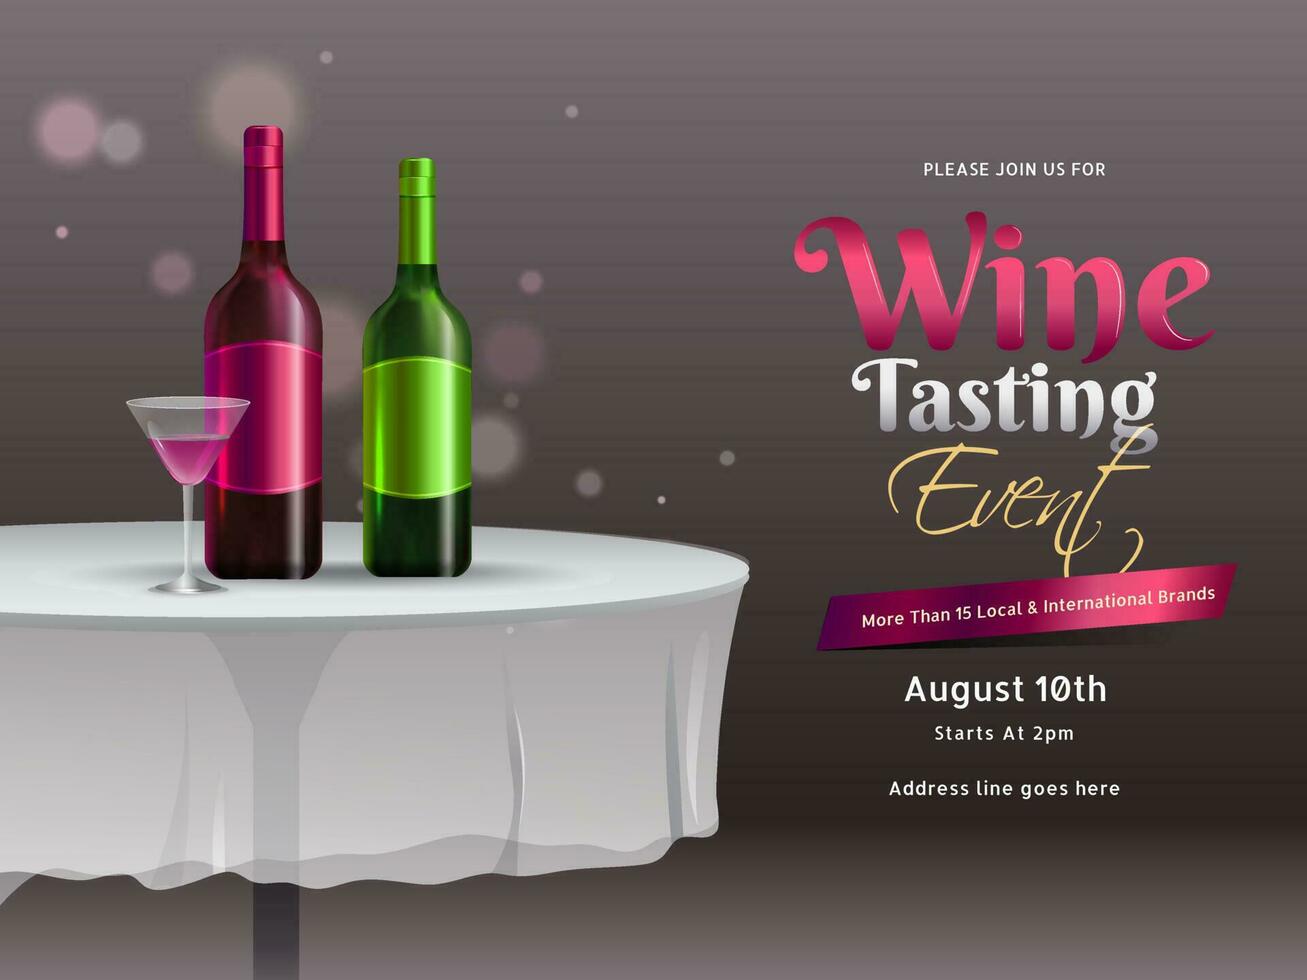 Illustration von Wein Flaschen mit trinken Glas auf Restaurant Tabelle zum Wein Verkostung Veranstaltung oder Party Feier Banner oder Poster Design mit Einzelheiten. vektor